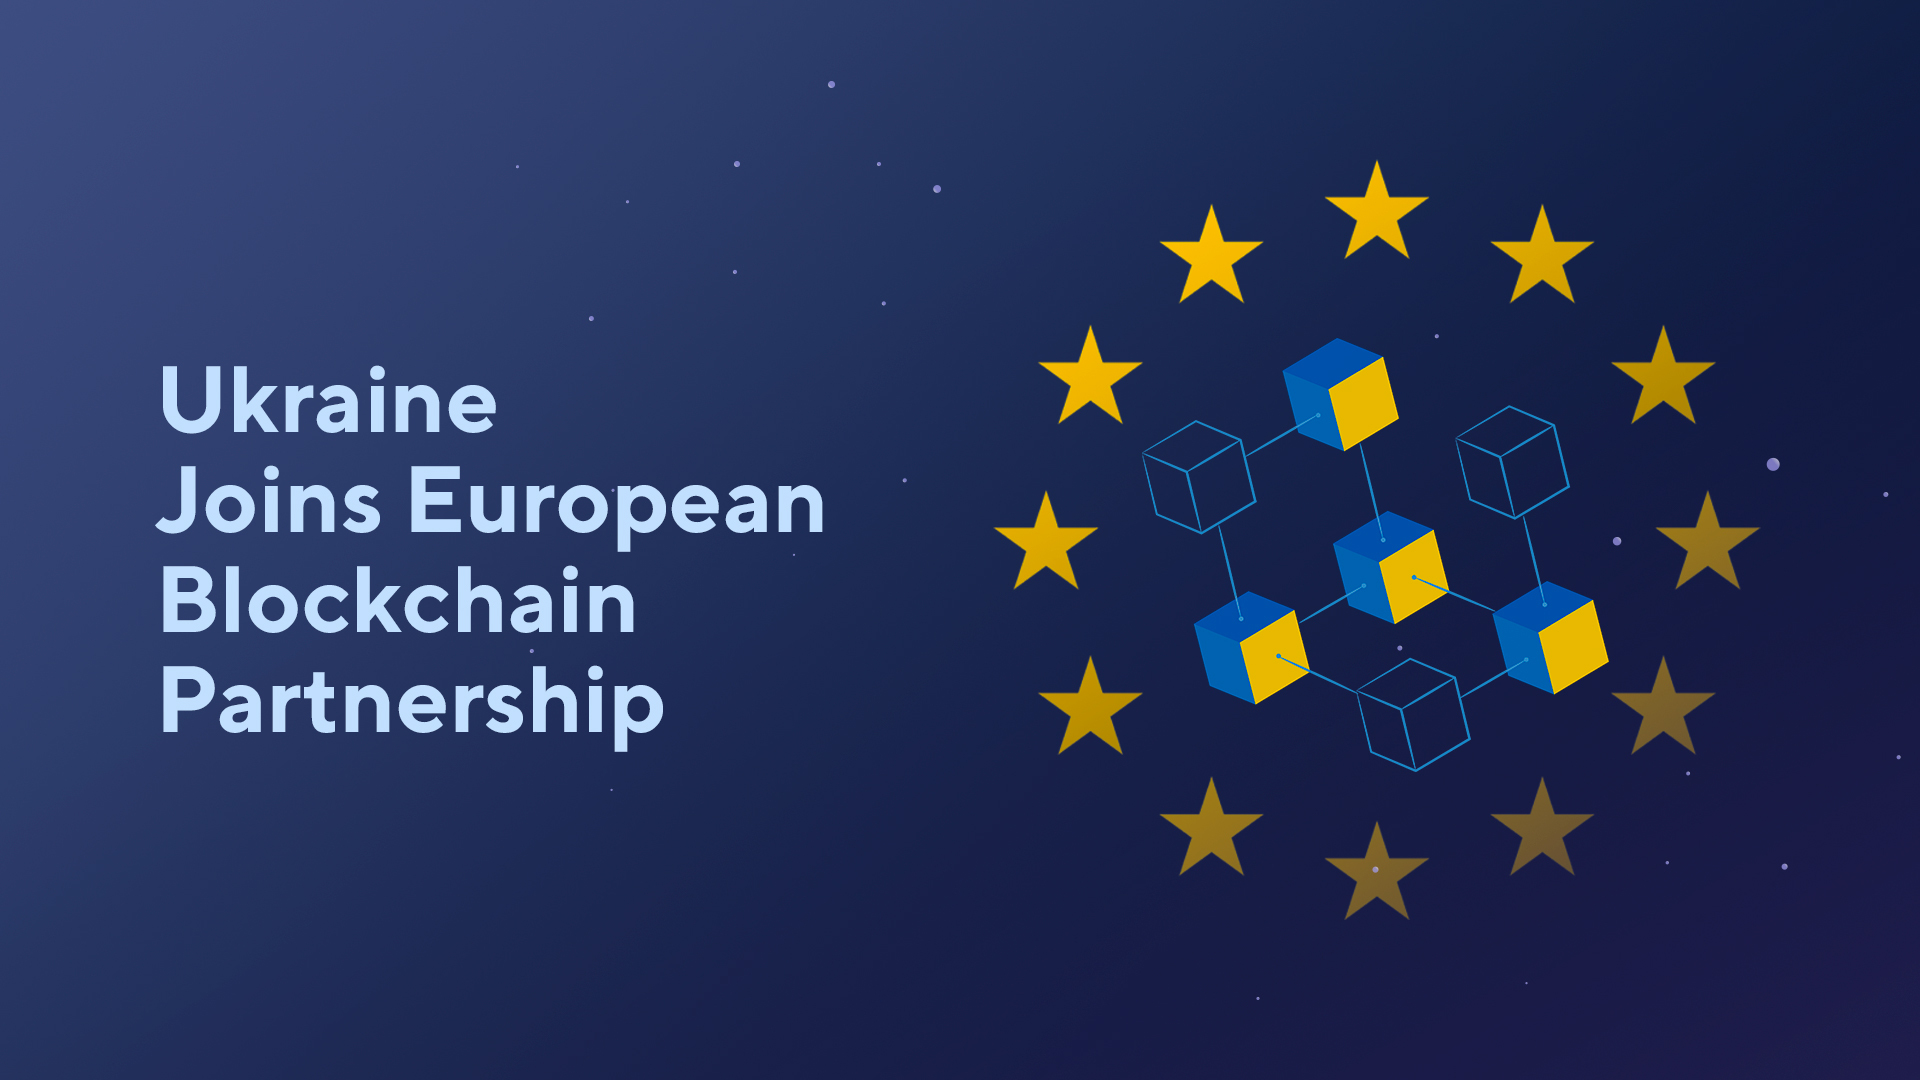 Ukraine Joins European Blockchain Partnership